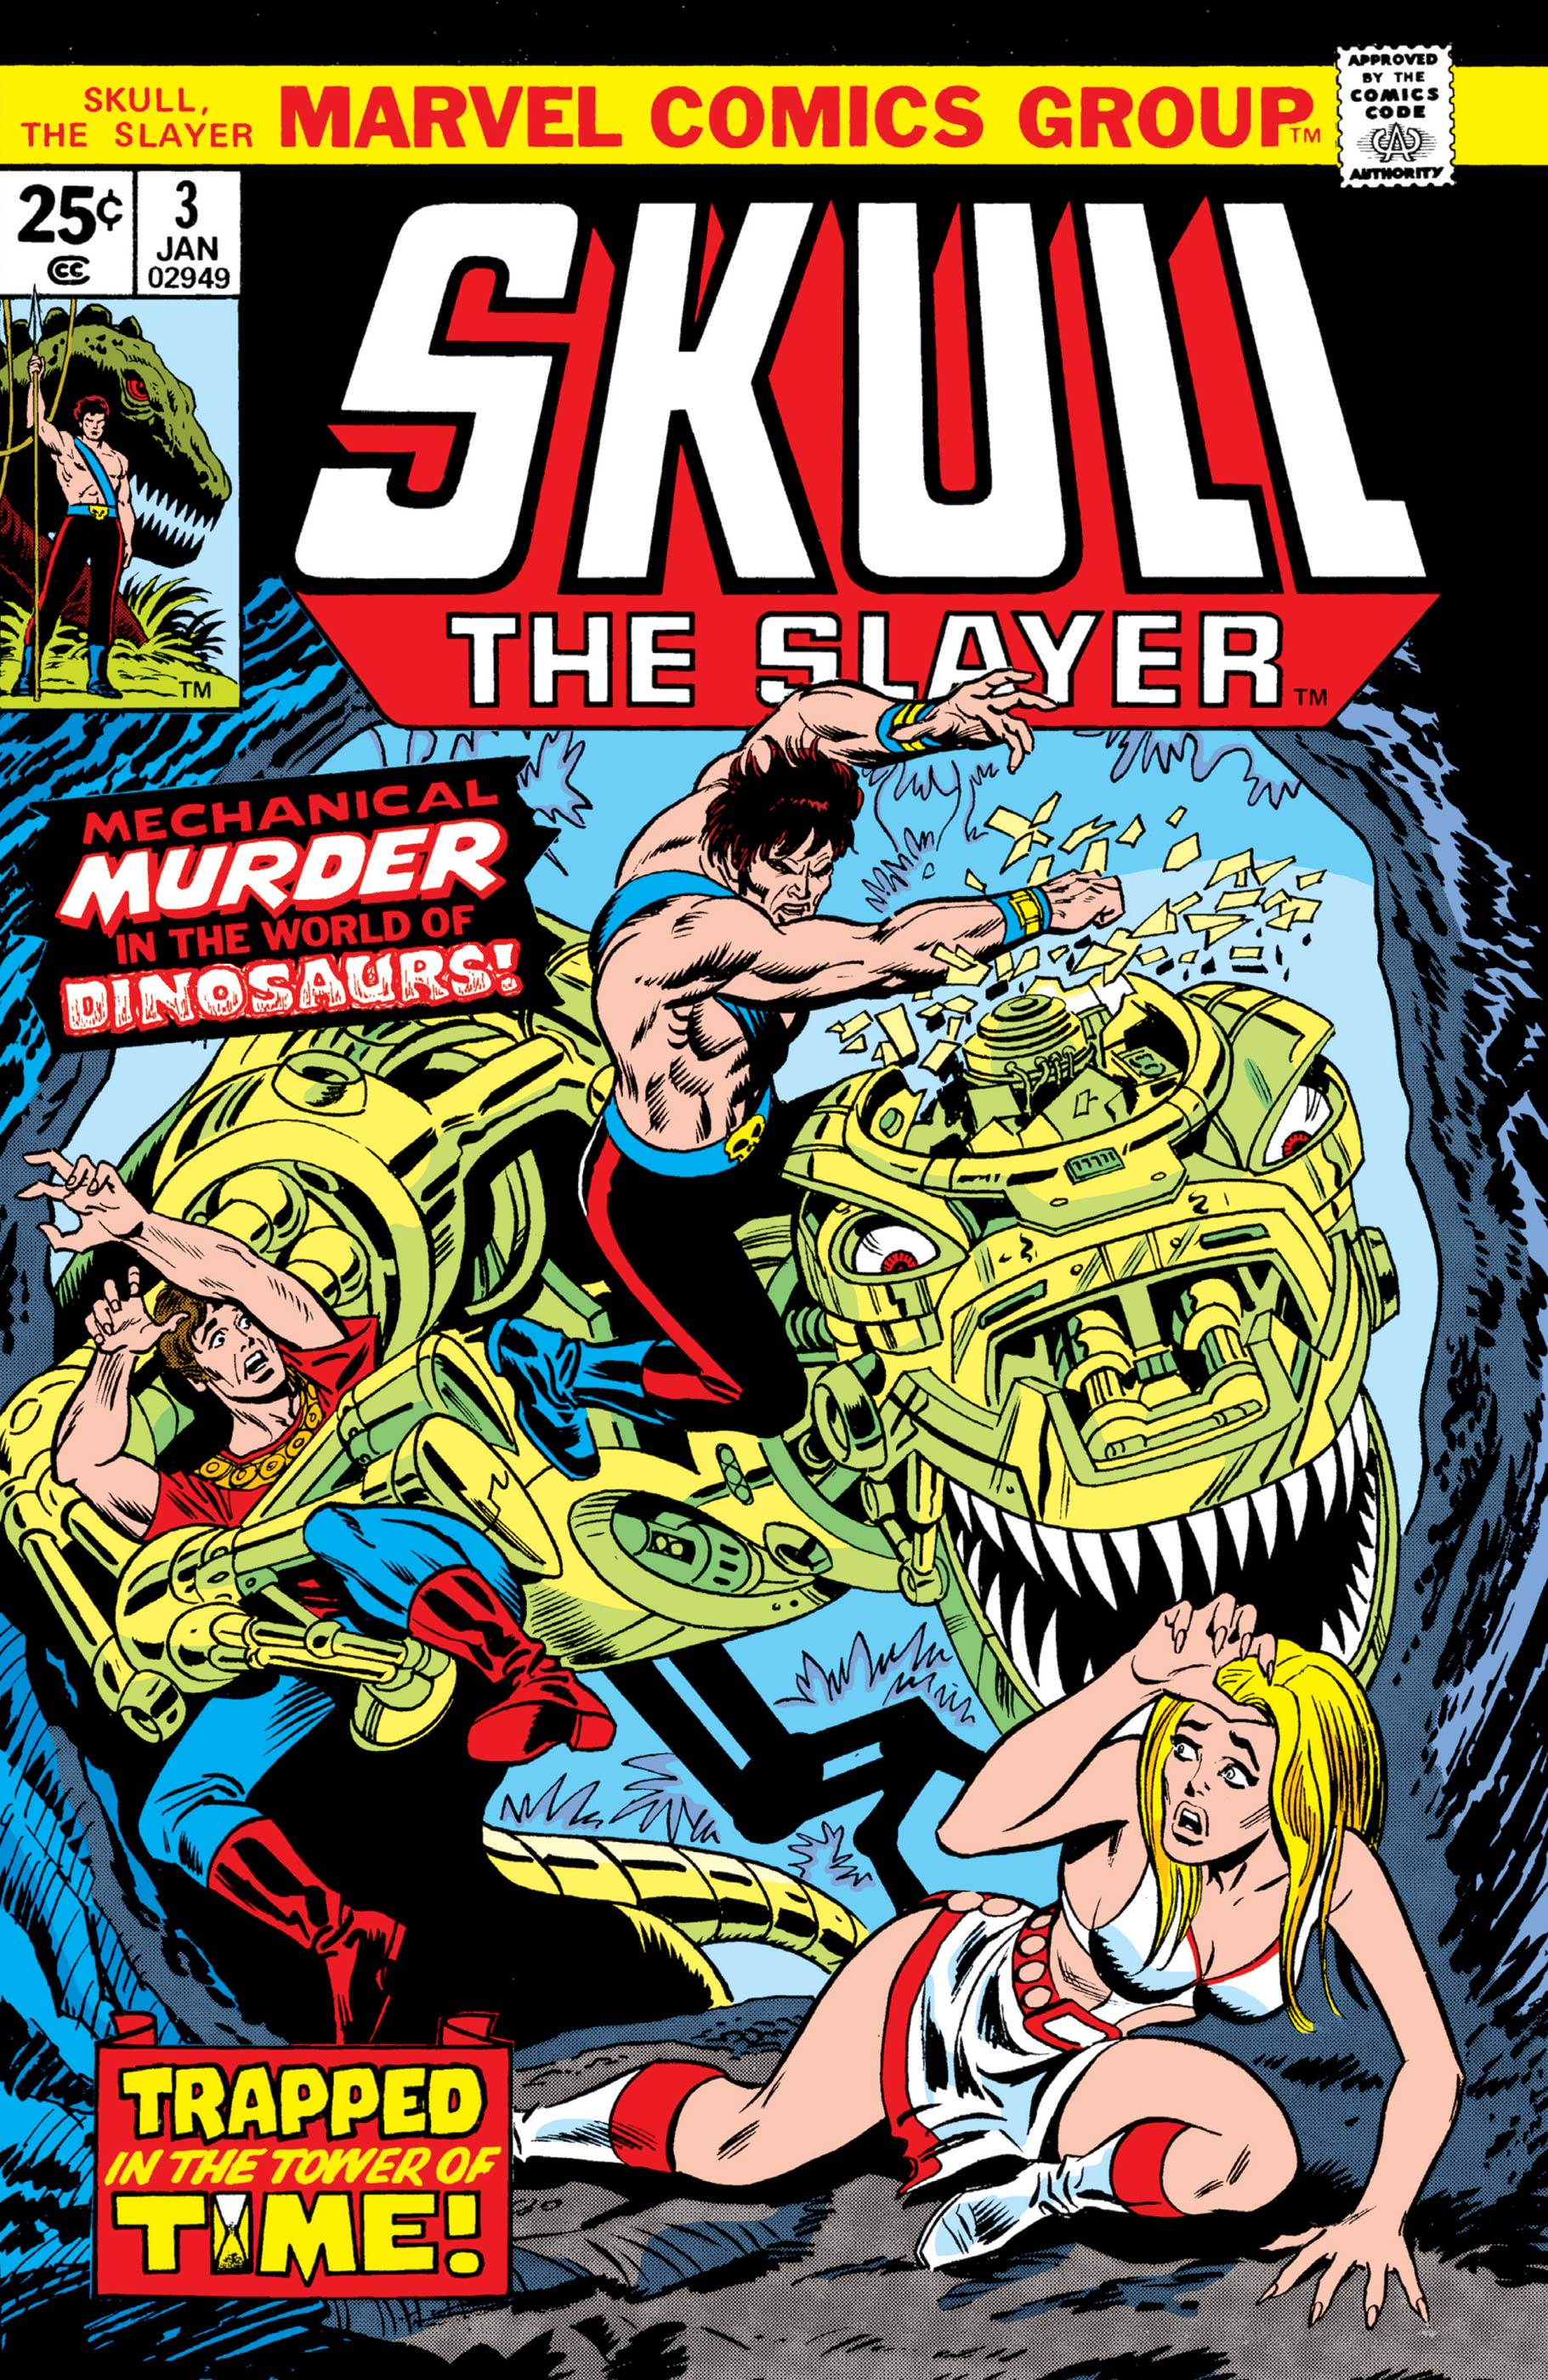 Skull the Slayer (1975) #3